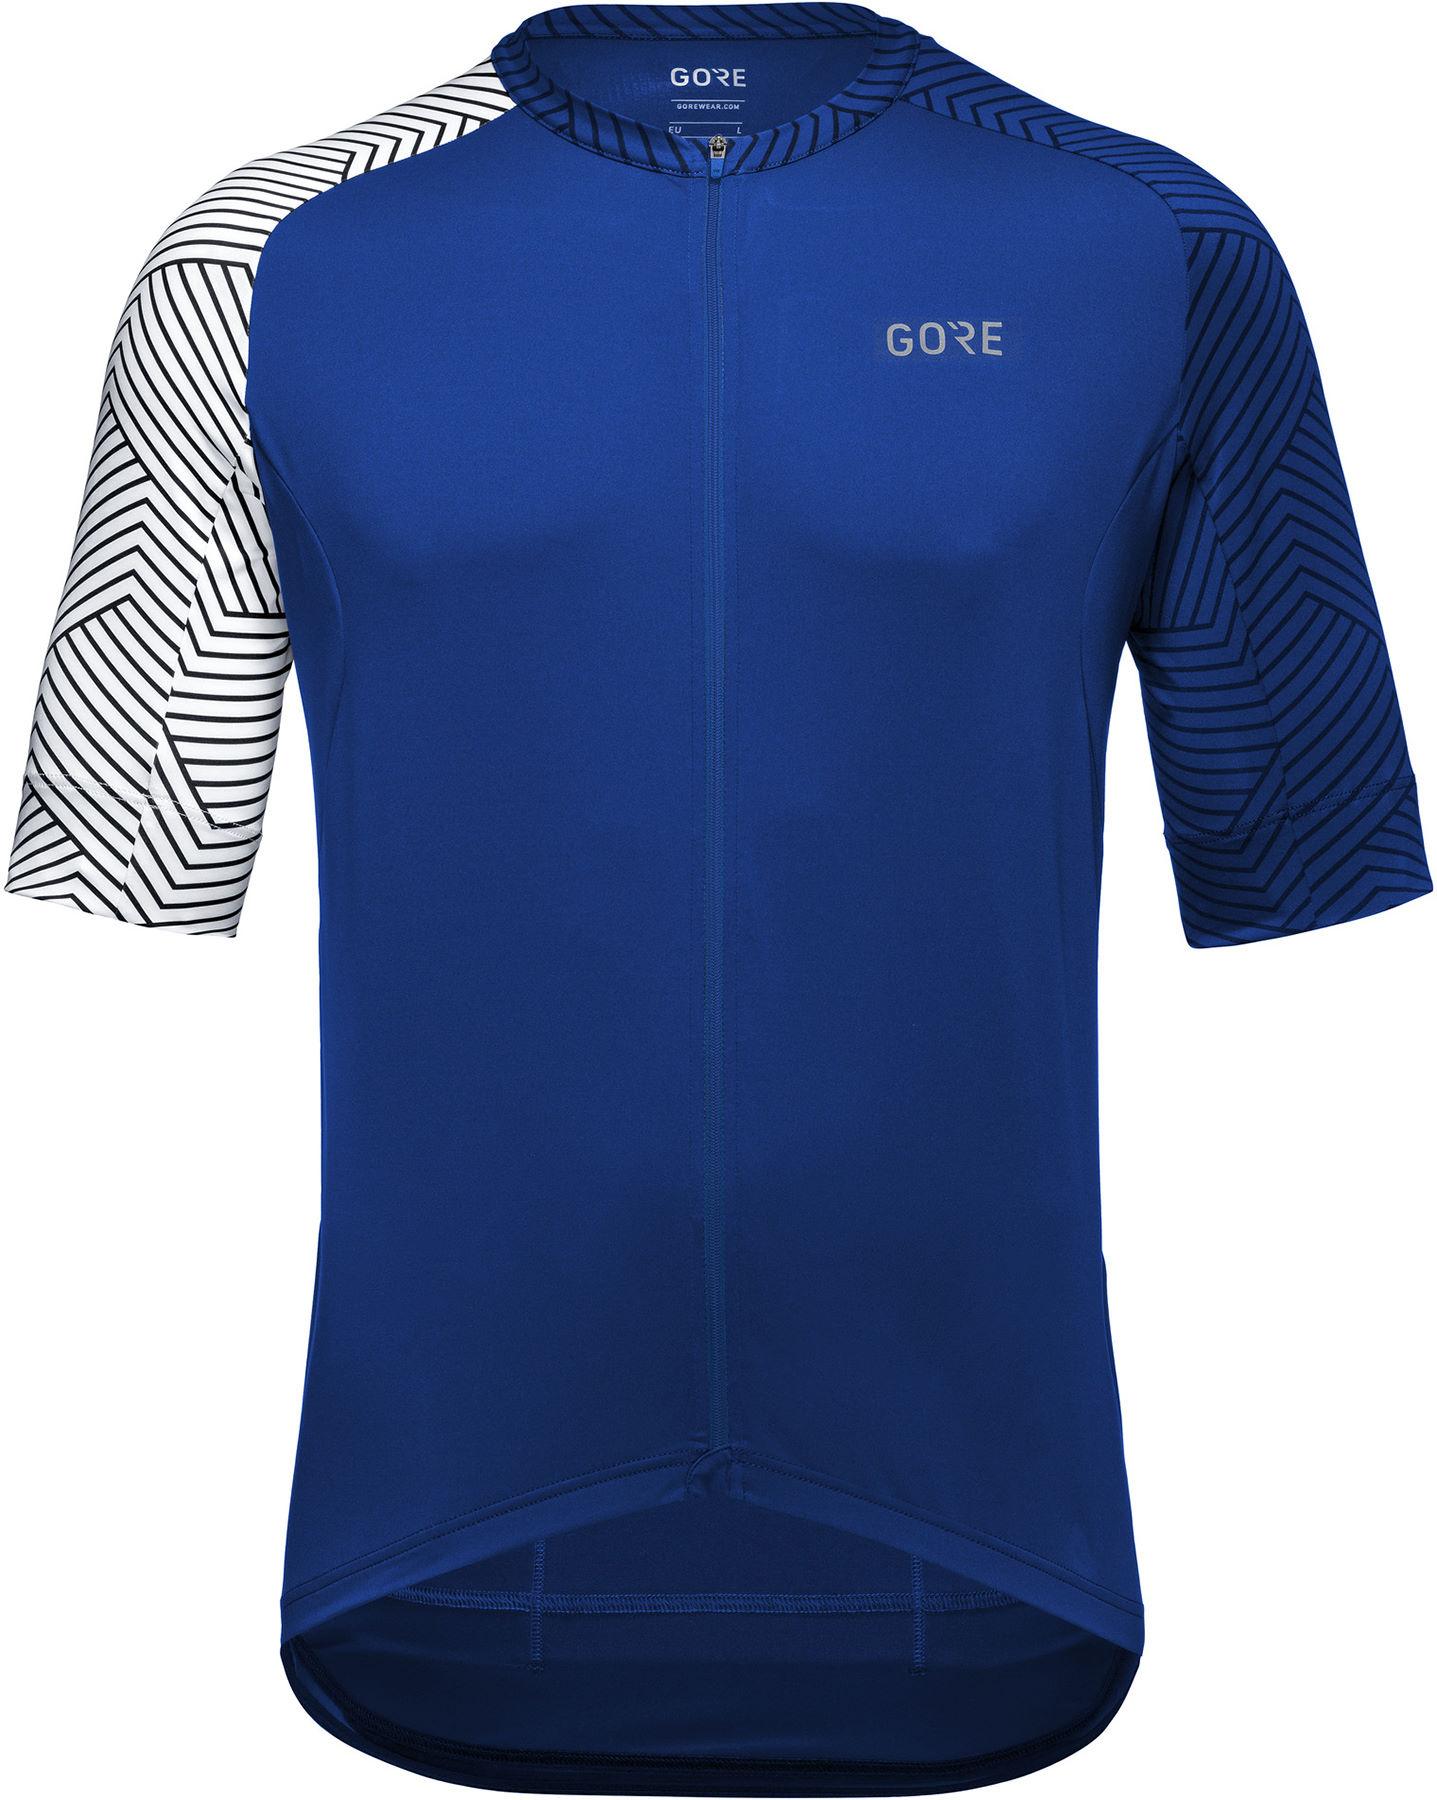 Gorewear C5 Jersey  Ultramarine Blue/white